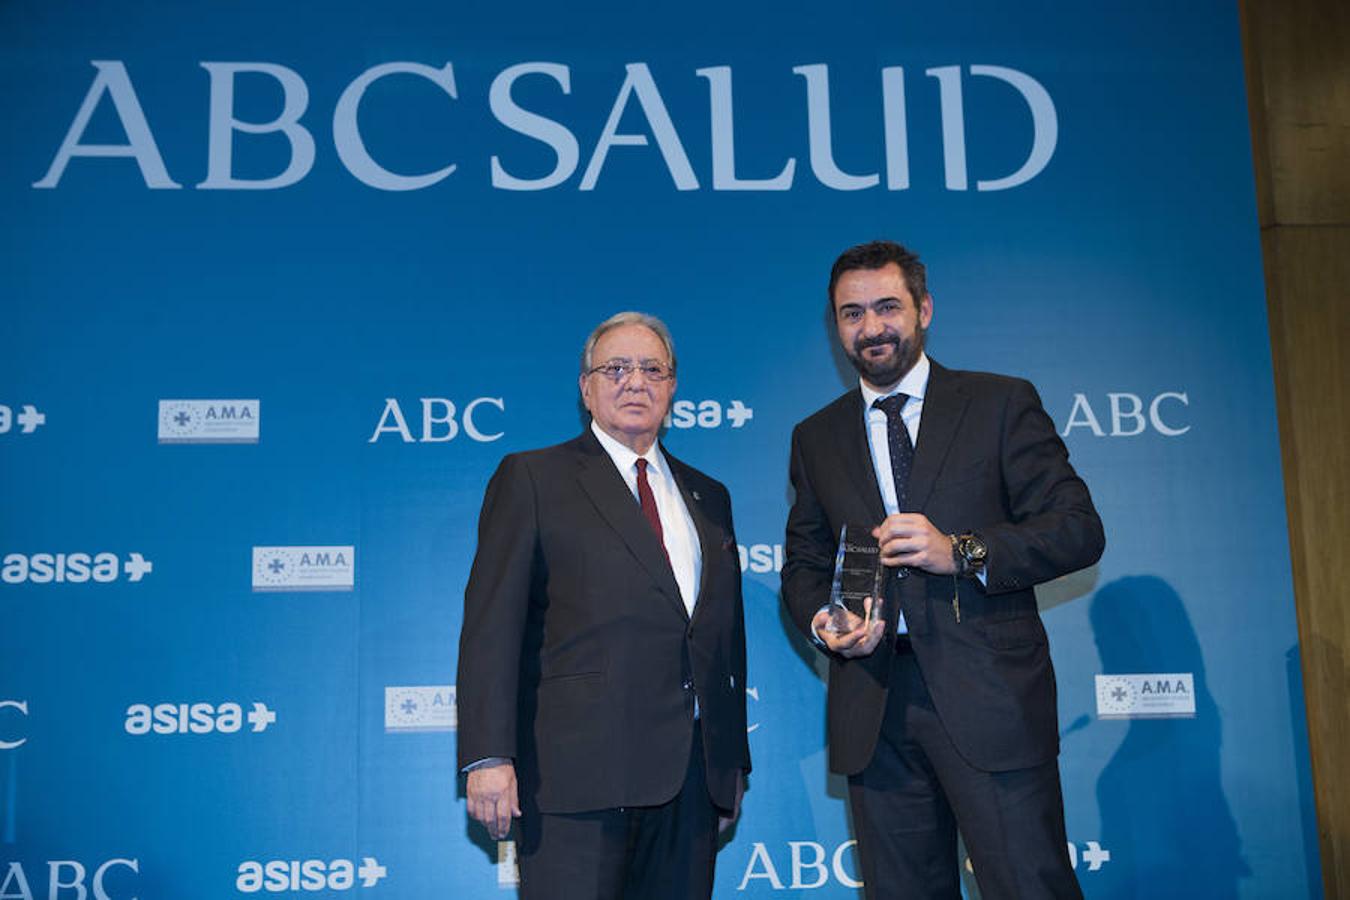 Los premios ABC Salud reconocen en sus seis categorías la labor más destacada de profesionales, instituciones y compañías del mundo sanitario